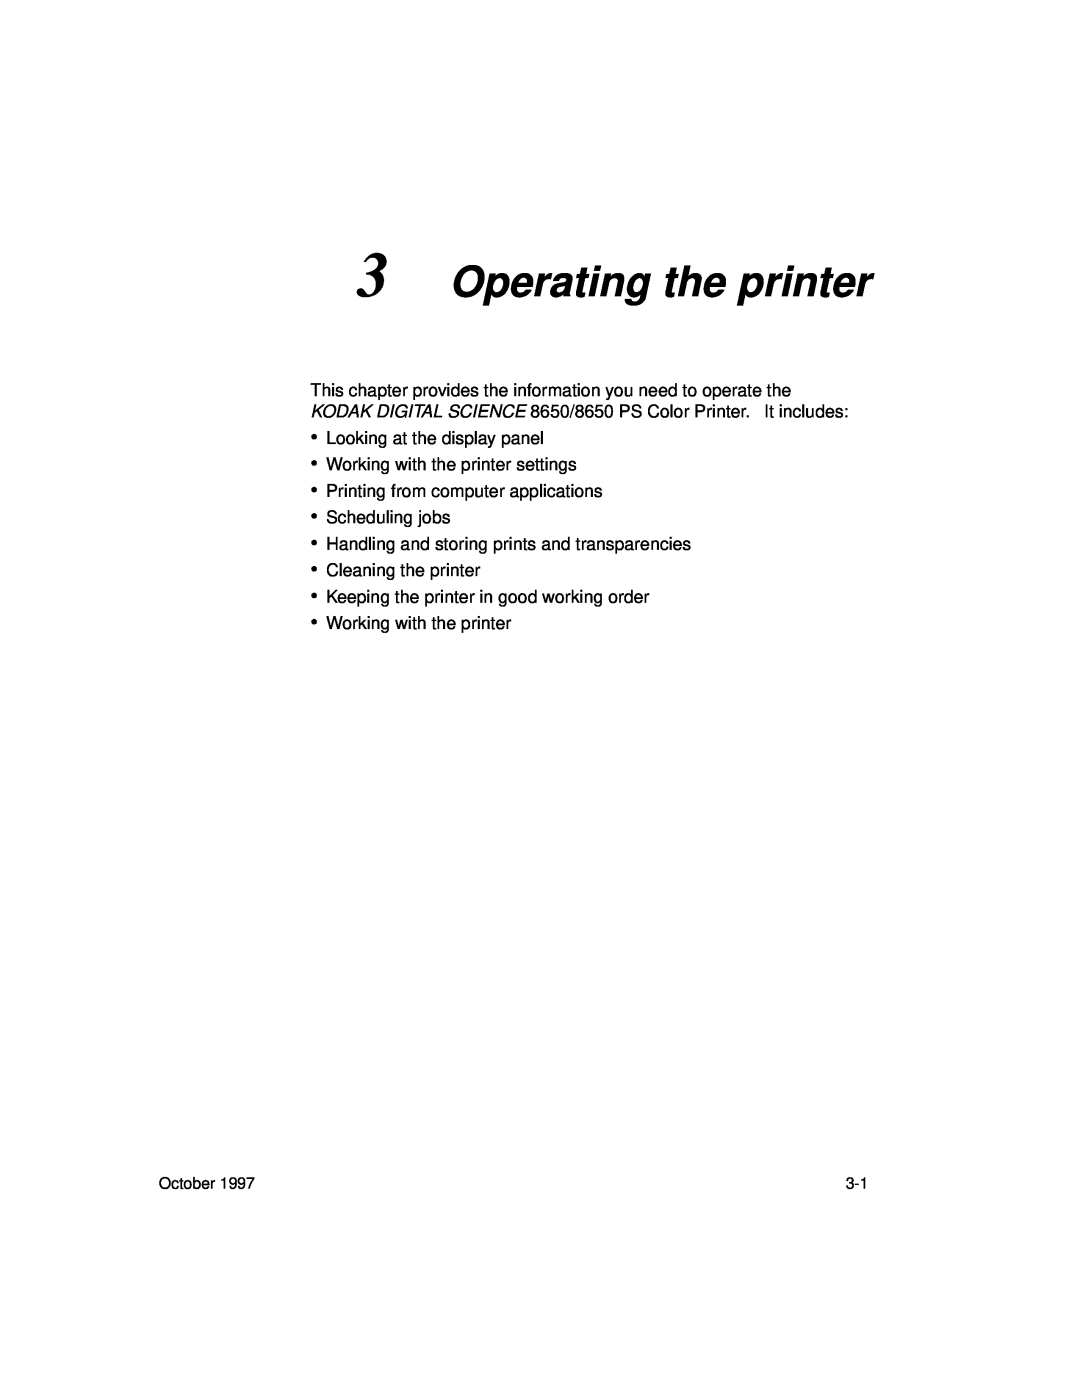 Kodak 8650 manual Operating the printer 